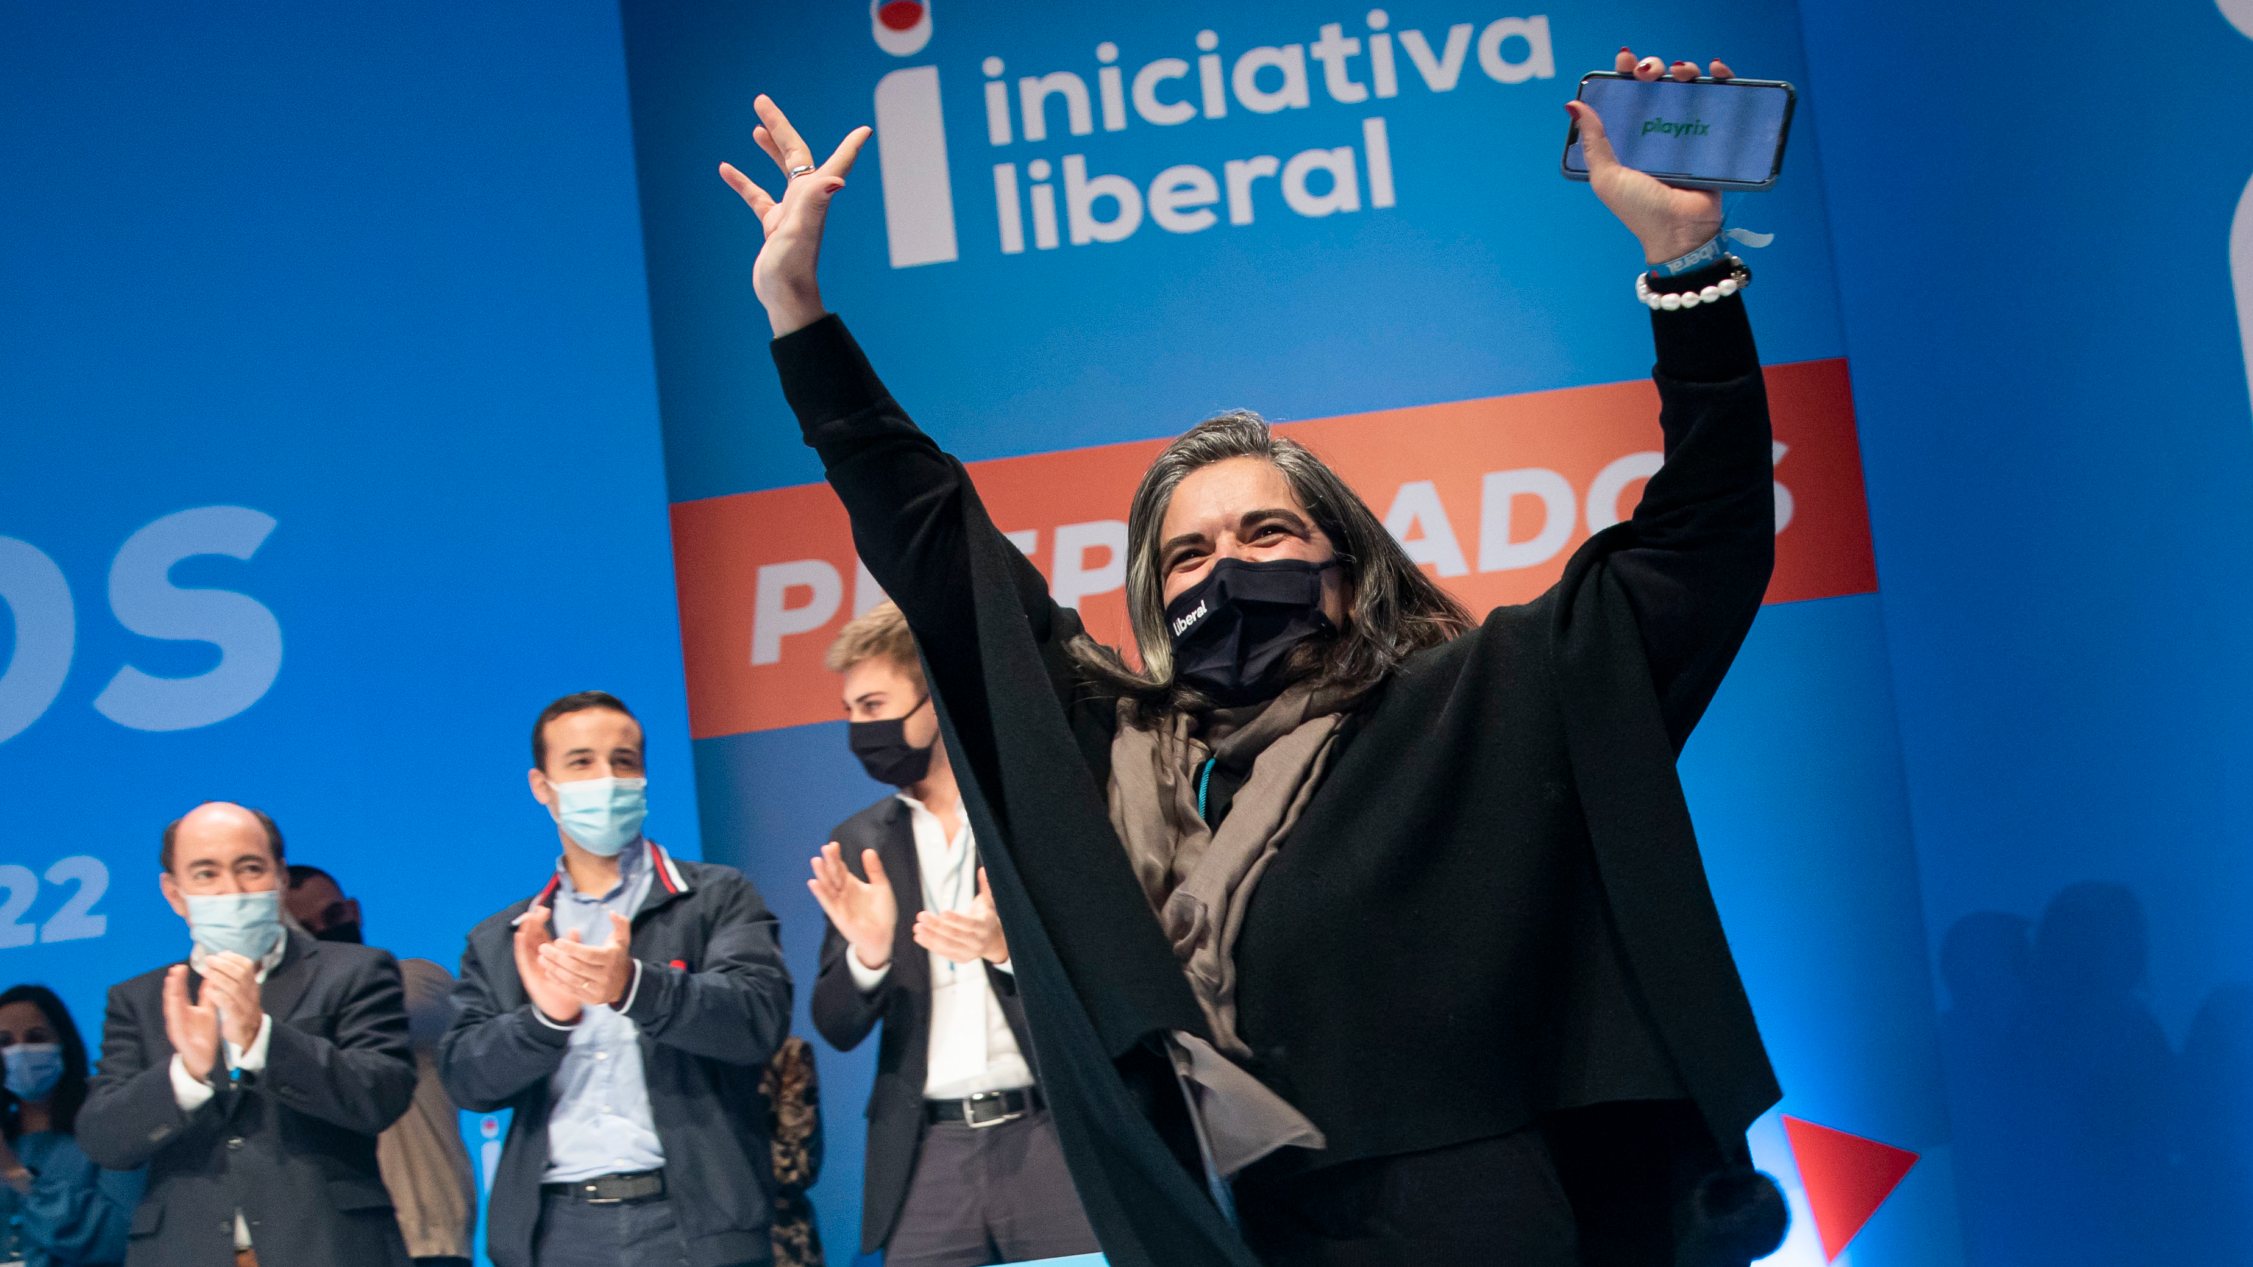 VI Convenção da Iniciativa Liberal - IL. O partido reúne em convenção no Centro de Congressos de Lisboa. Entrada em palco de Carla Castro. Lisboa, 12 de dezembro de 2021. JOÃO PORFÍRIO/OBSERVADOR